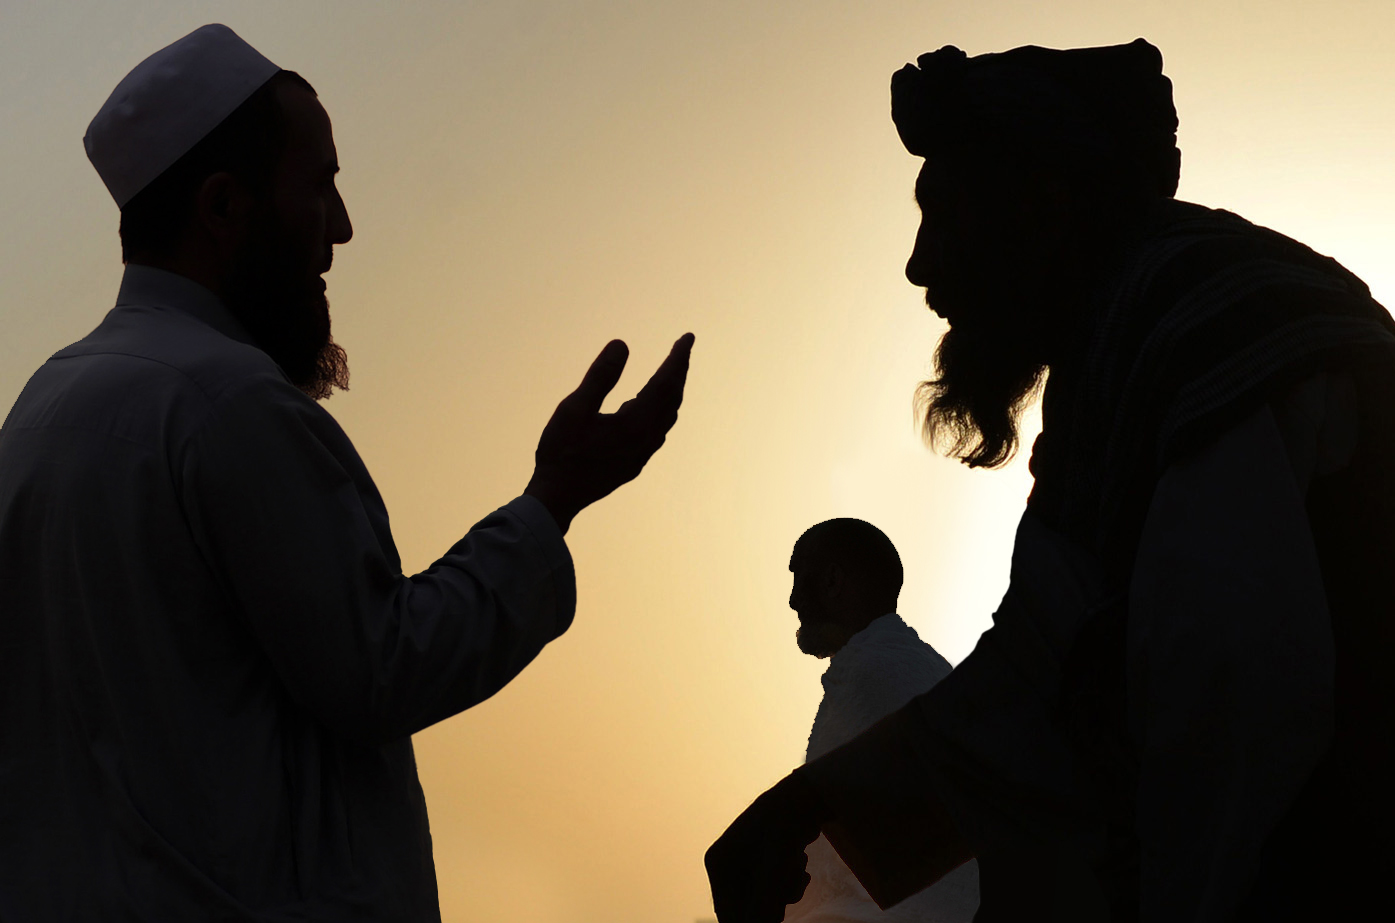 صورة علماء دين يلغون كلمة “حلال” نهائياً من الدين الإسلامي